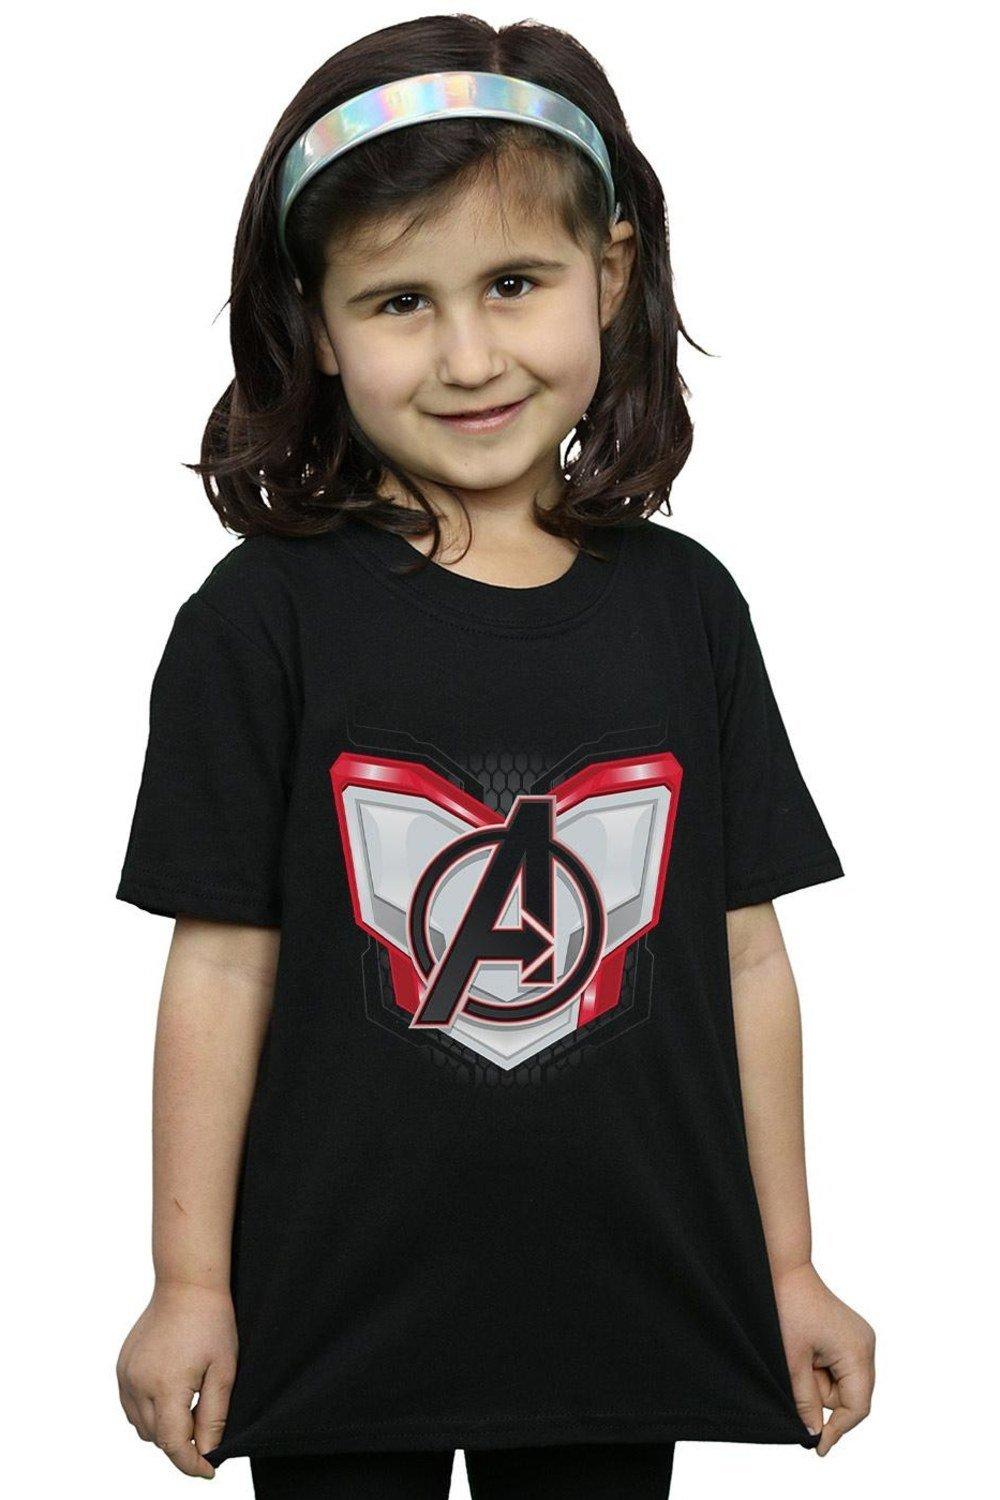 Avengers Endgame Quantum Realm Suit Cotton T-Shirt